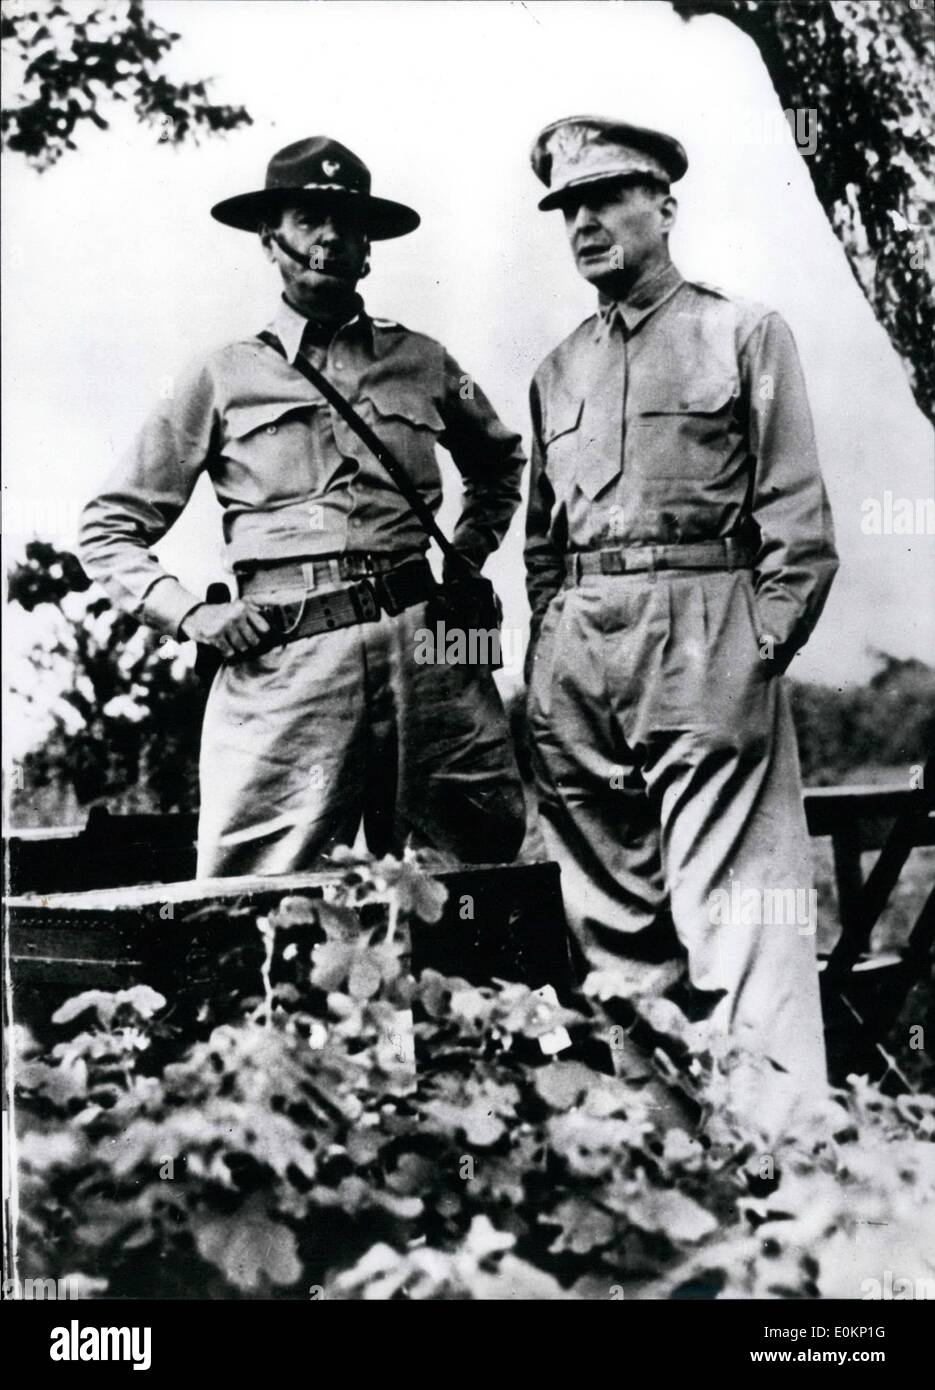 Marzo 03, 1942 - dijo MacArthur para iniciar ofensiva: el General MacArthur, Comandante Supremo de las fuerzas aliadas en el Sudoeste del Pacífico, dijo hoy en Adelaida, ''el Presidente Roosevelt me ordenó romper el Jap líneas y proceder del Corregidor a Australia con el propósito, como ''entender, de organizar en ofensiva americana contra los japoneses. El objetivo principal de esta es el alivio de las Filipinas. Vine a través de y volveré''. La foto muestra una imagen de la recién llegada aquí del general MacArthur (derecha) con Major-Gen Foto de stock